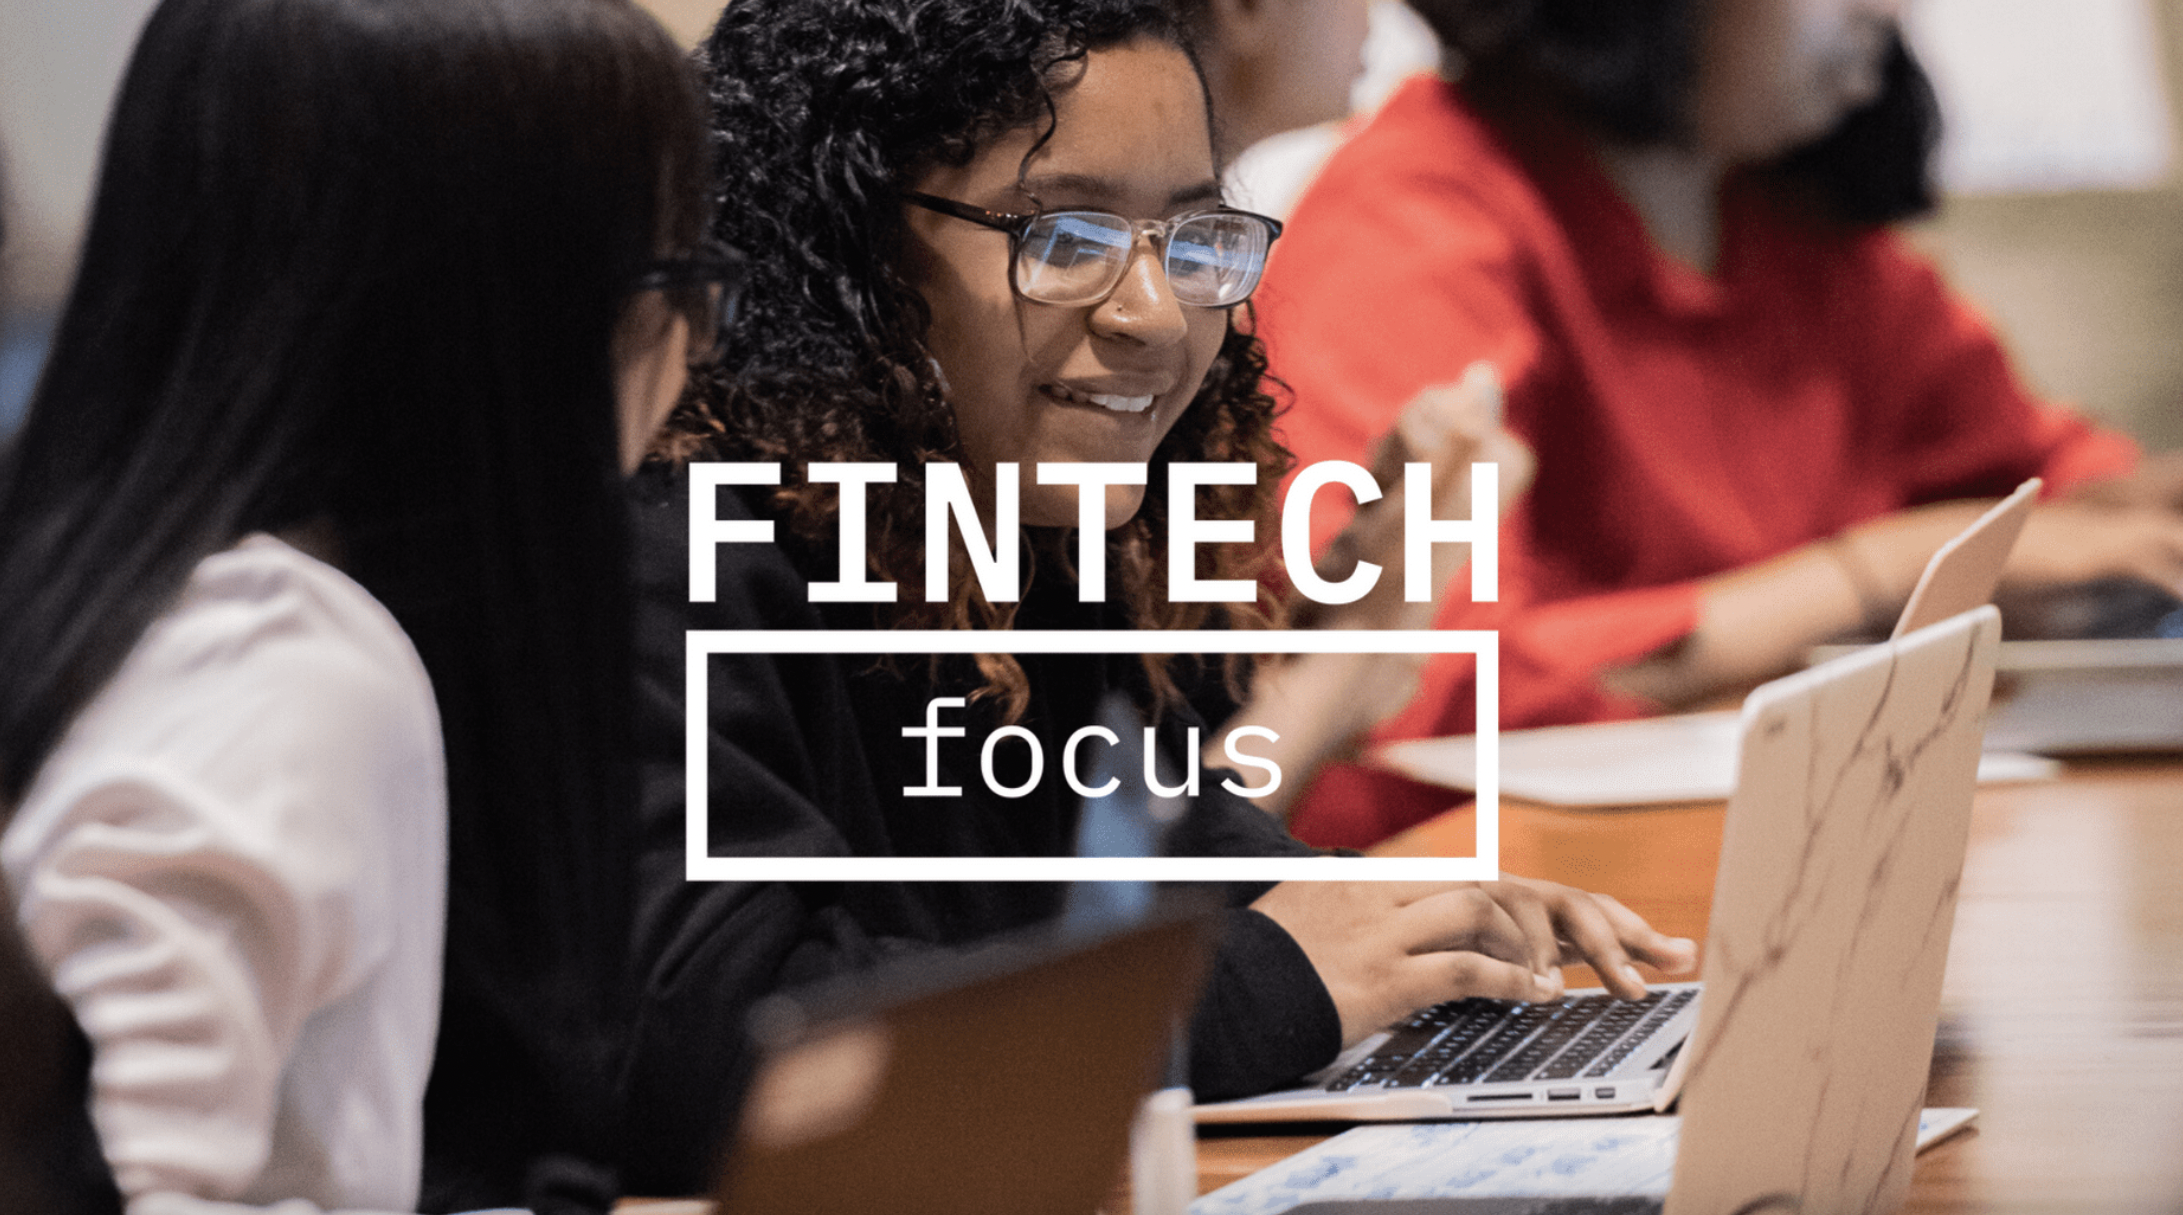 Bank of America, Fintech Focus Fellow